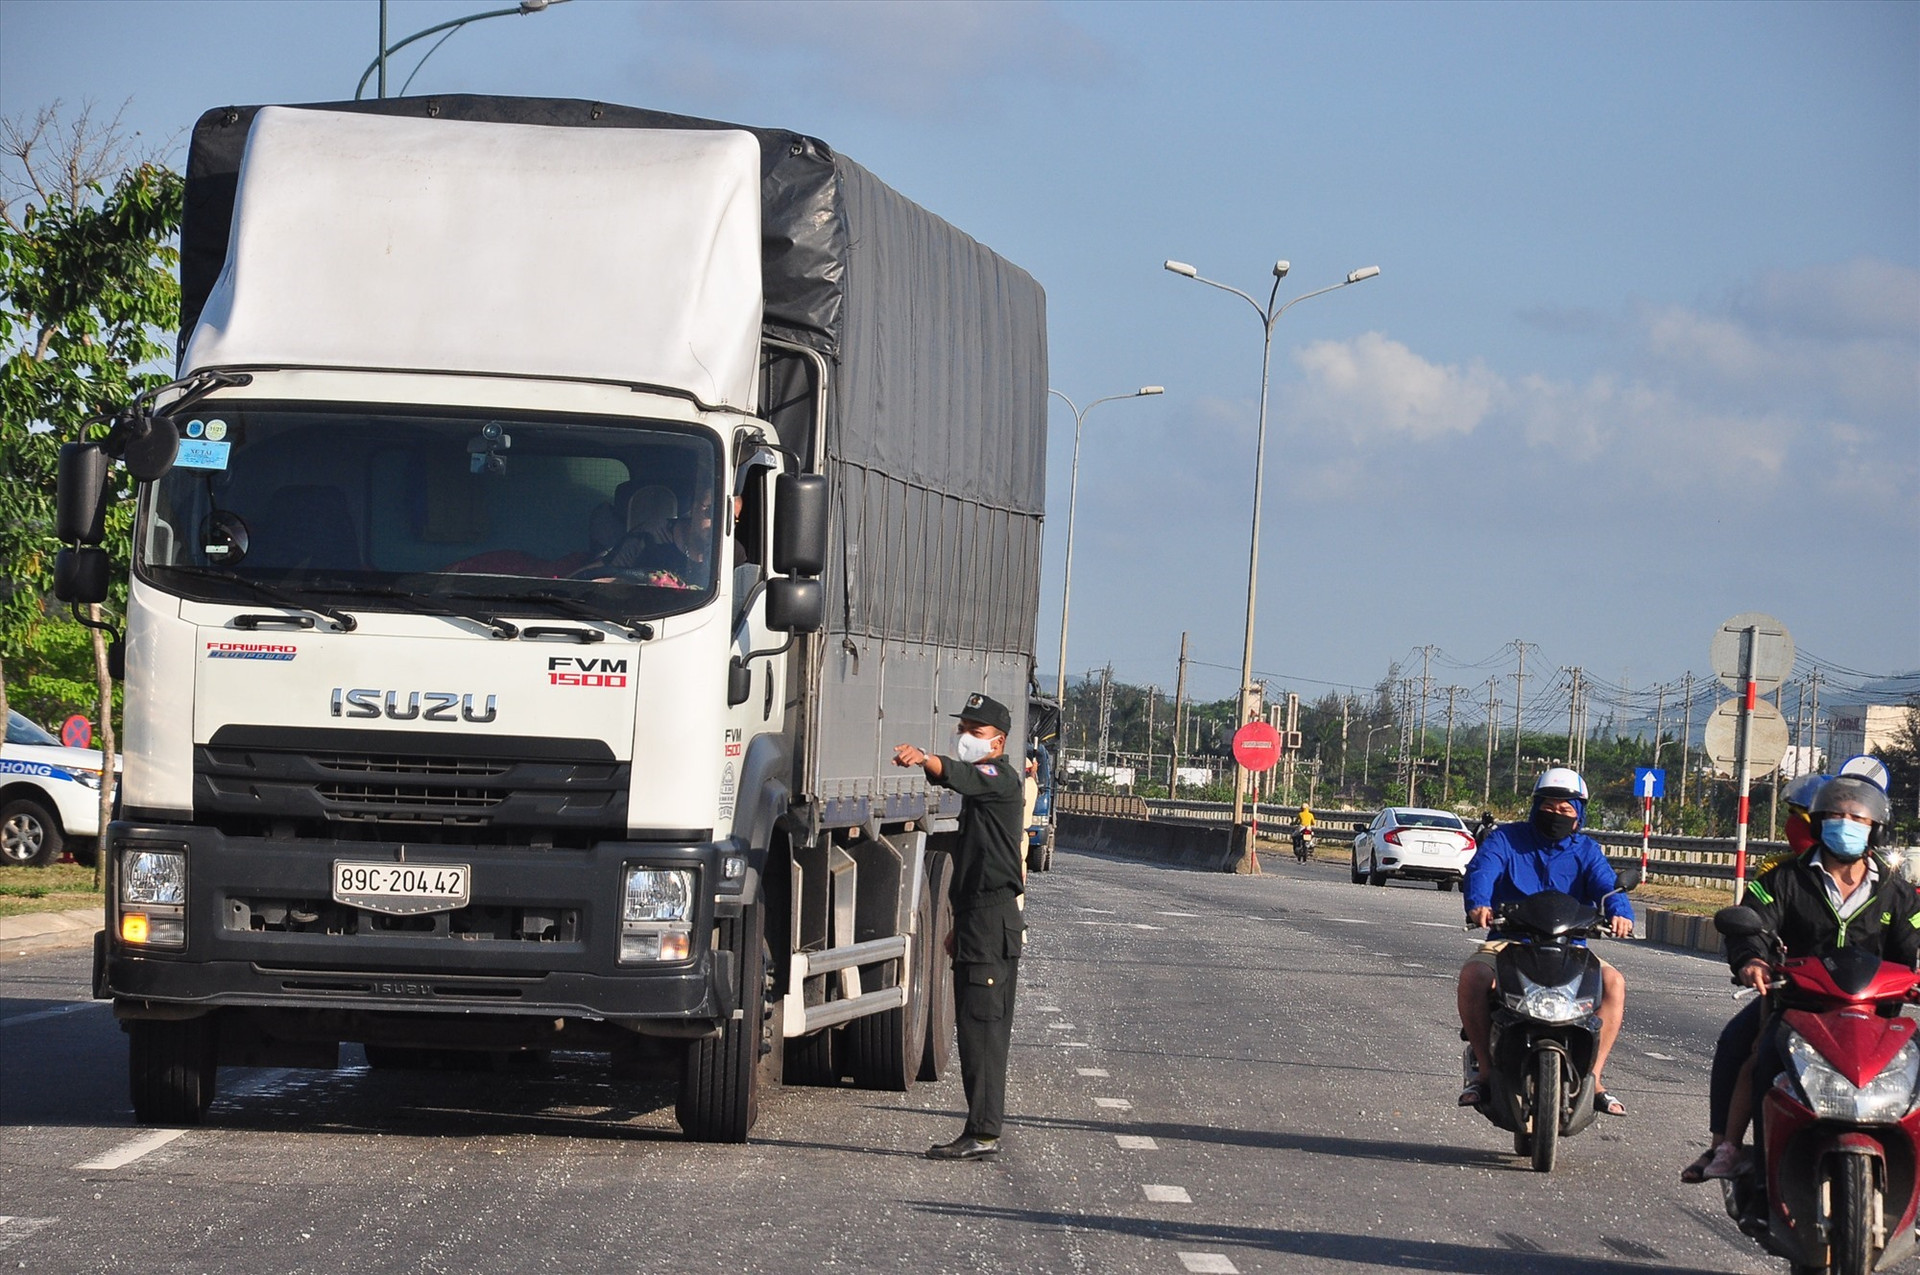 Giữa cái nắng chói chang, một chiến sĩ cảnh sát cơ động đang hướng dẫn tài xế xe tải chấp hành việc kiểm soát dịch bệnh Covid-19 tại chốt kiểm soát phía nam. Ảnh: V.A